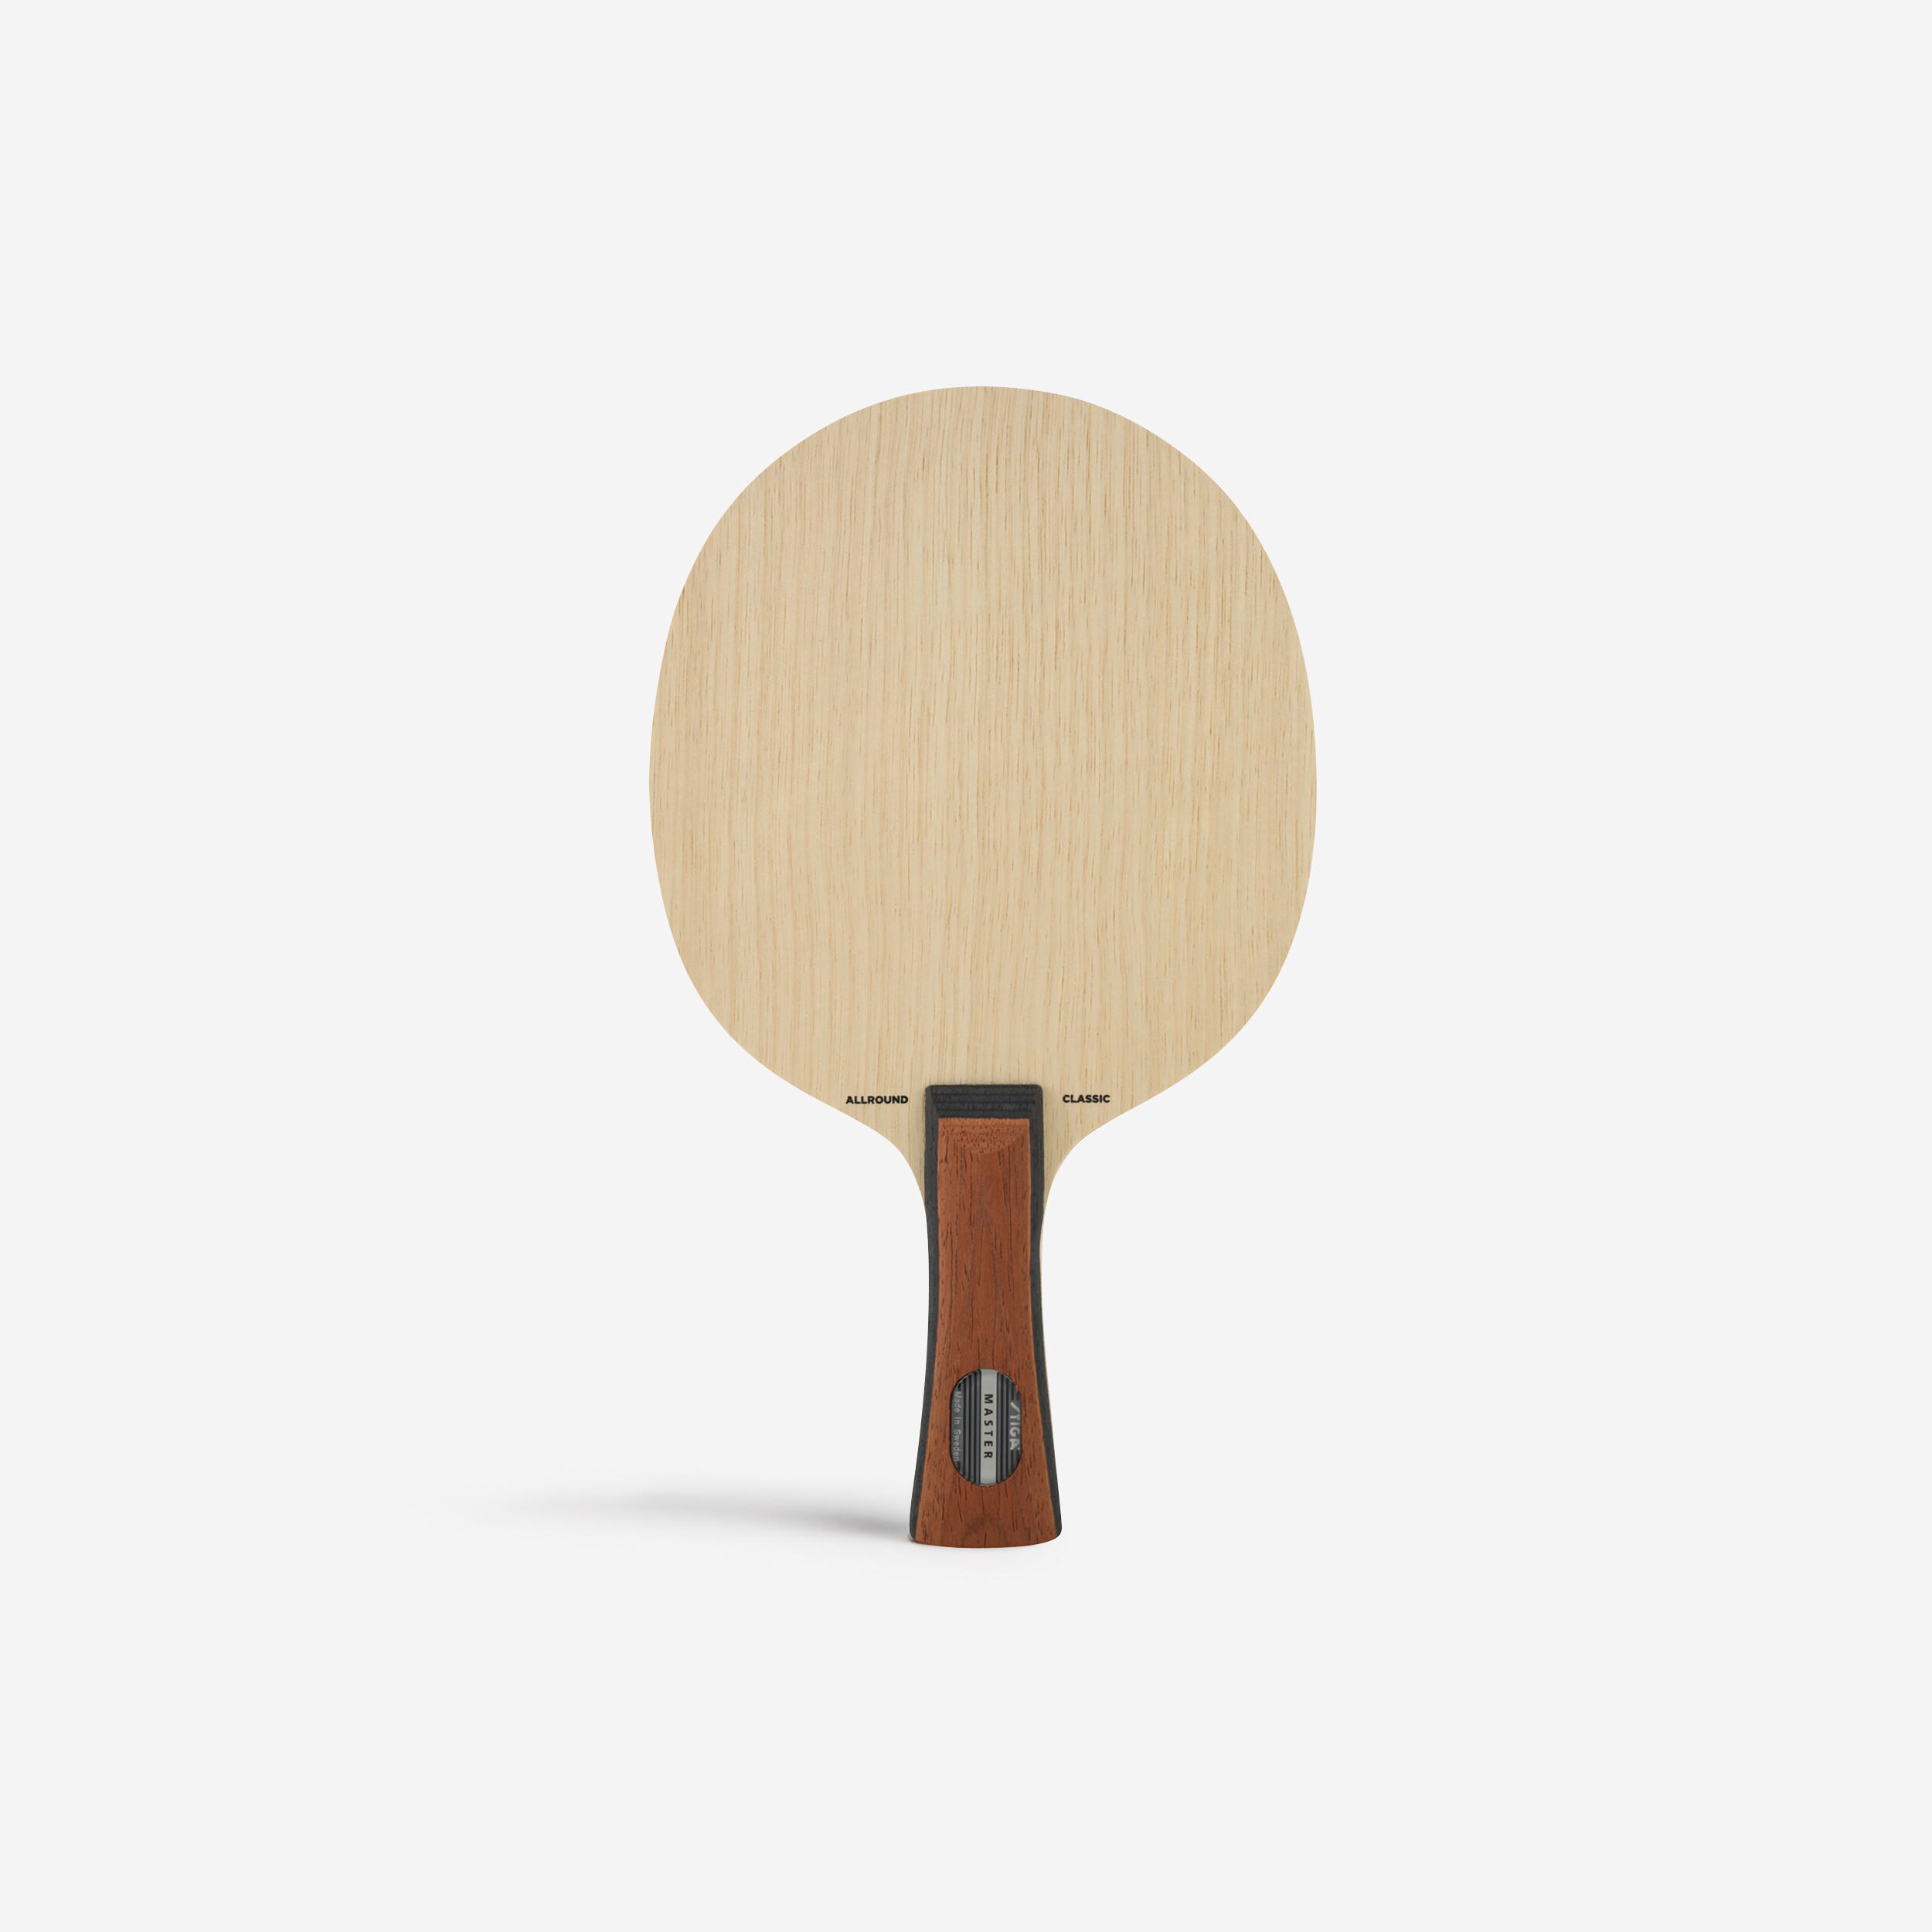 Structură lemn paletă tenis de masă ALLROUND CLASSIC